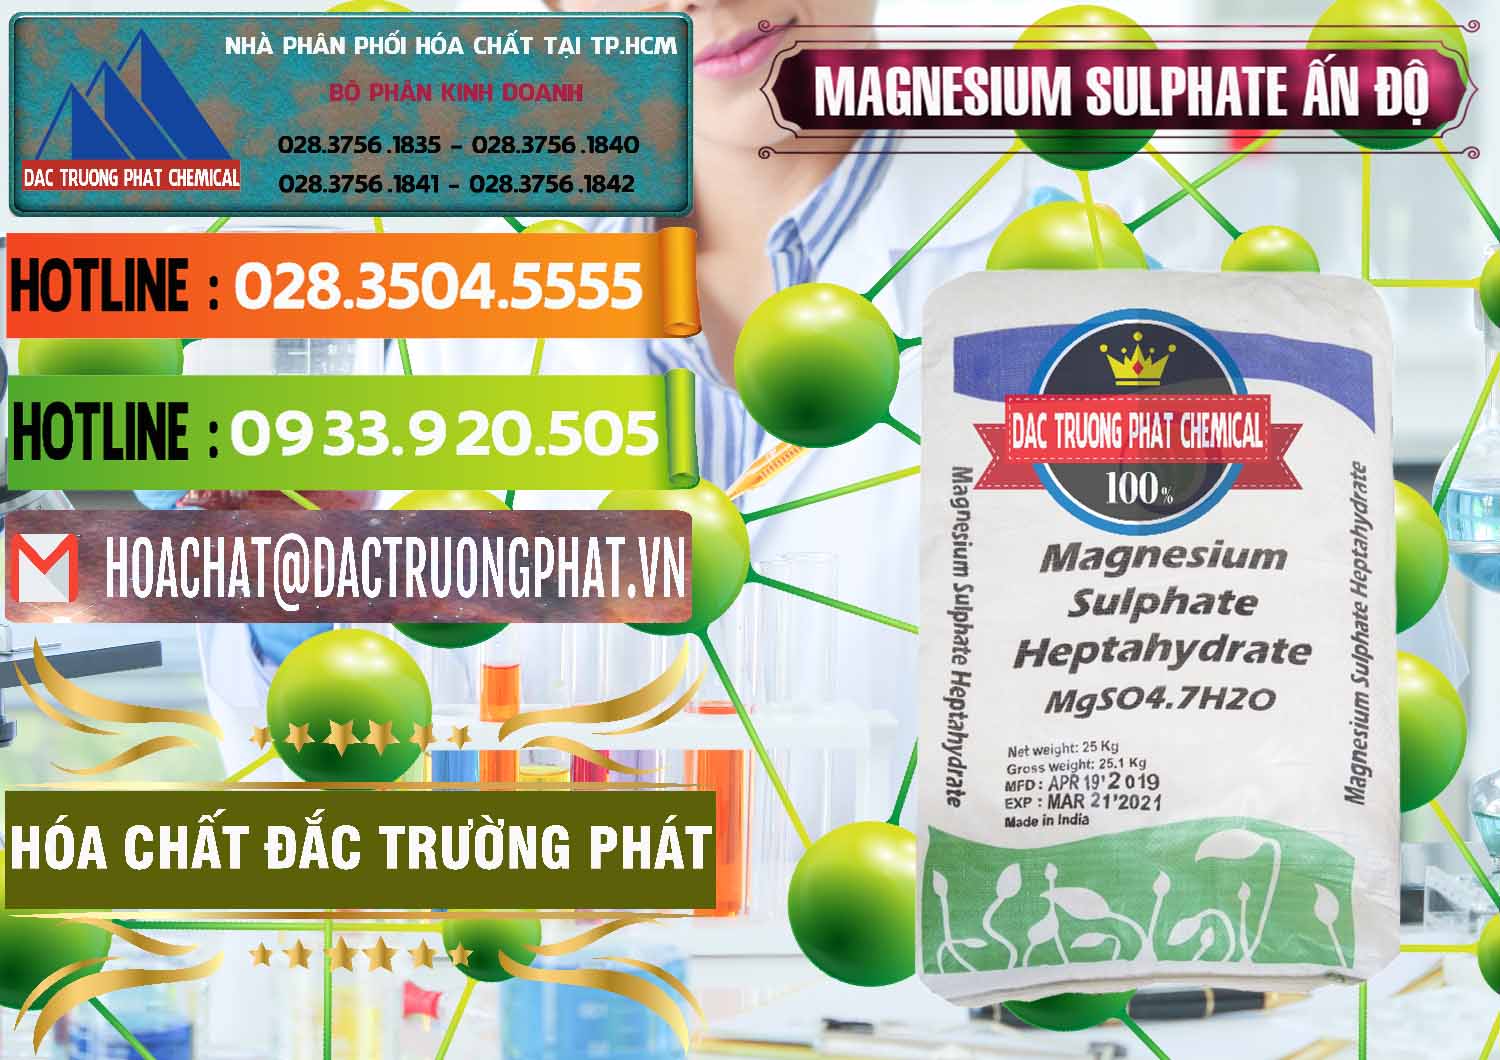 Nơi bán & cung ứng MGSO4.7H2O – Magnesium Sulphate Heptahydrate Ấn Độ India - 0362 - Nơi phân phối và kinh doanh hóa chất tại TP.HCM - cungcaphoachat.com.vn